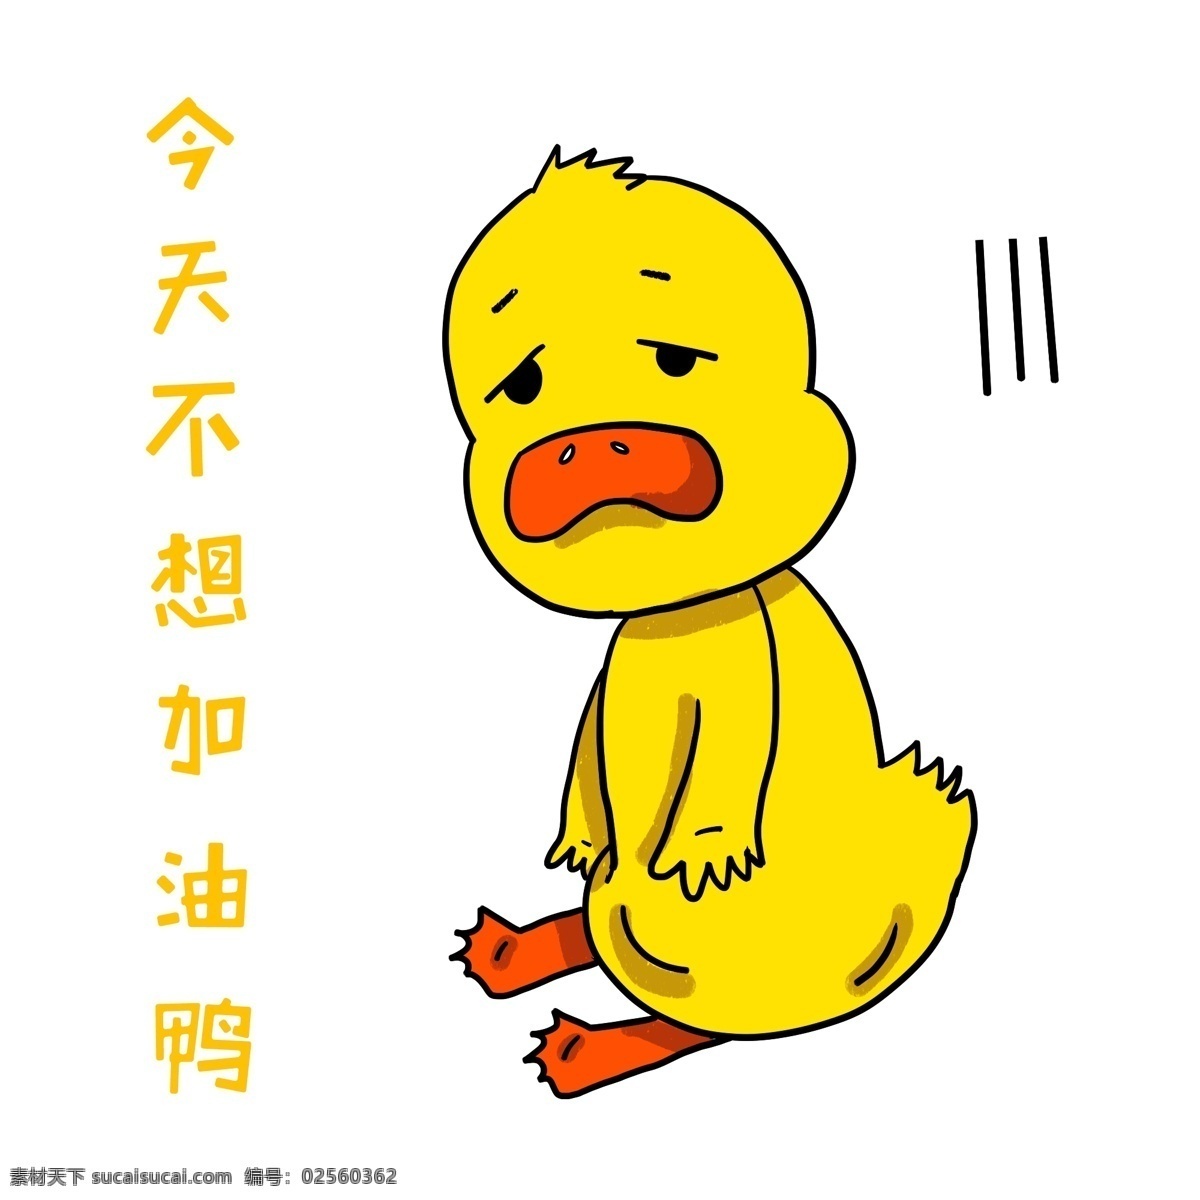 手绘 动物 颓废 鸭 插画 黄色的鸭子 坐着的鸭子 卡通插画 手绘动物插画 颓废的鸭子 无精打采 鸭子